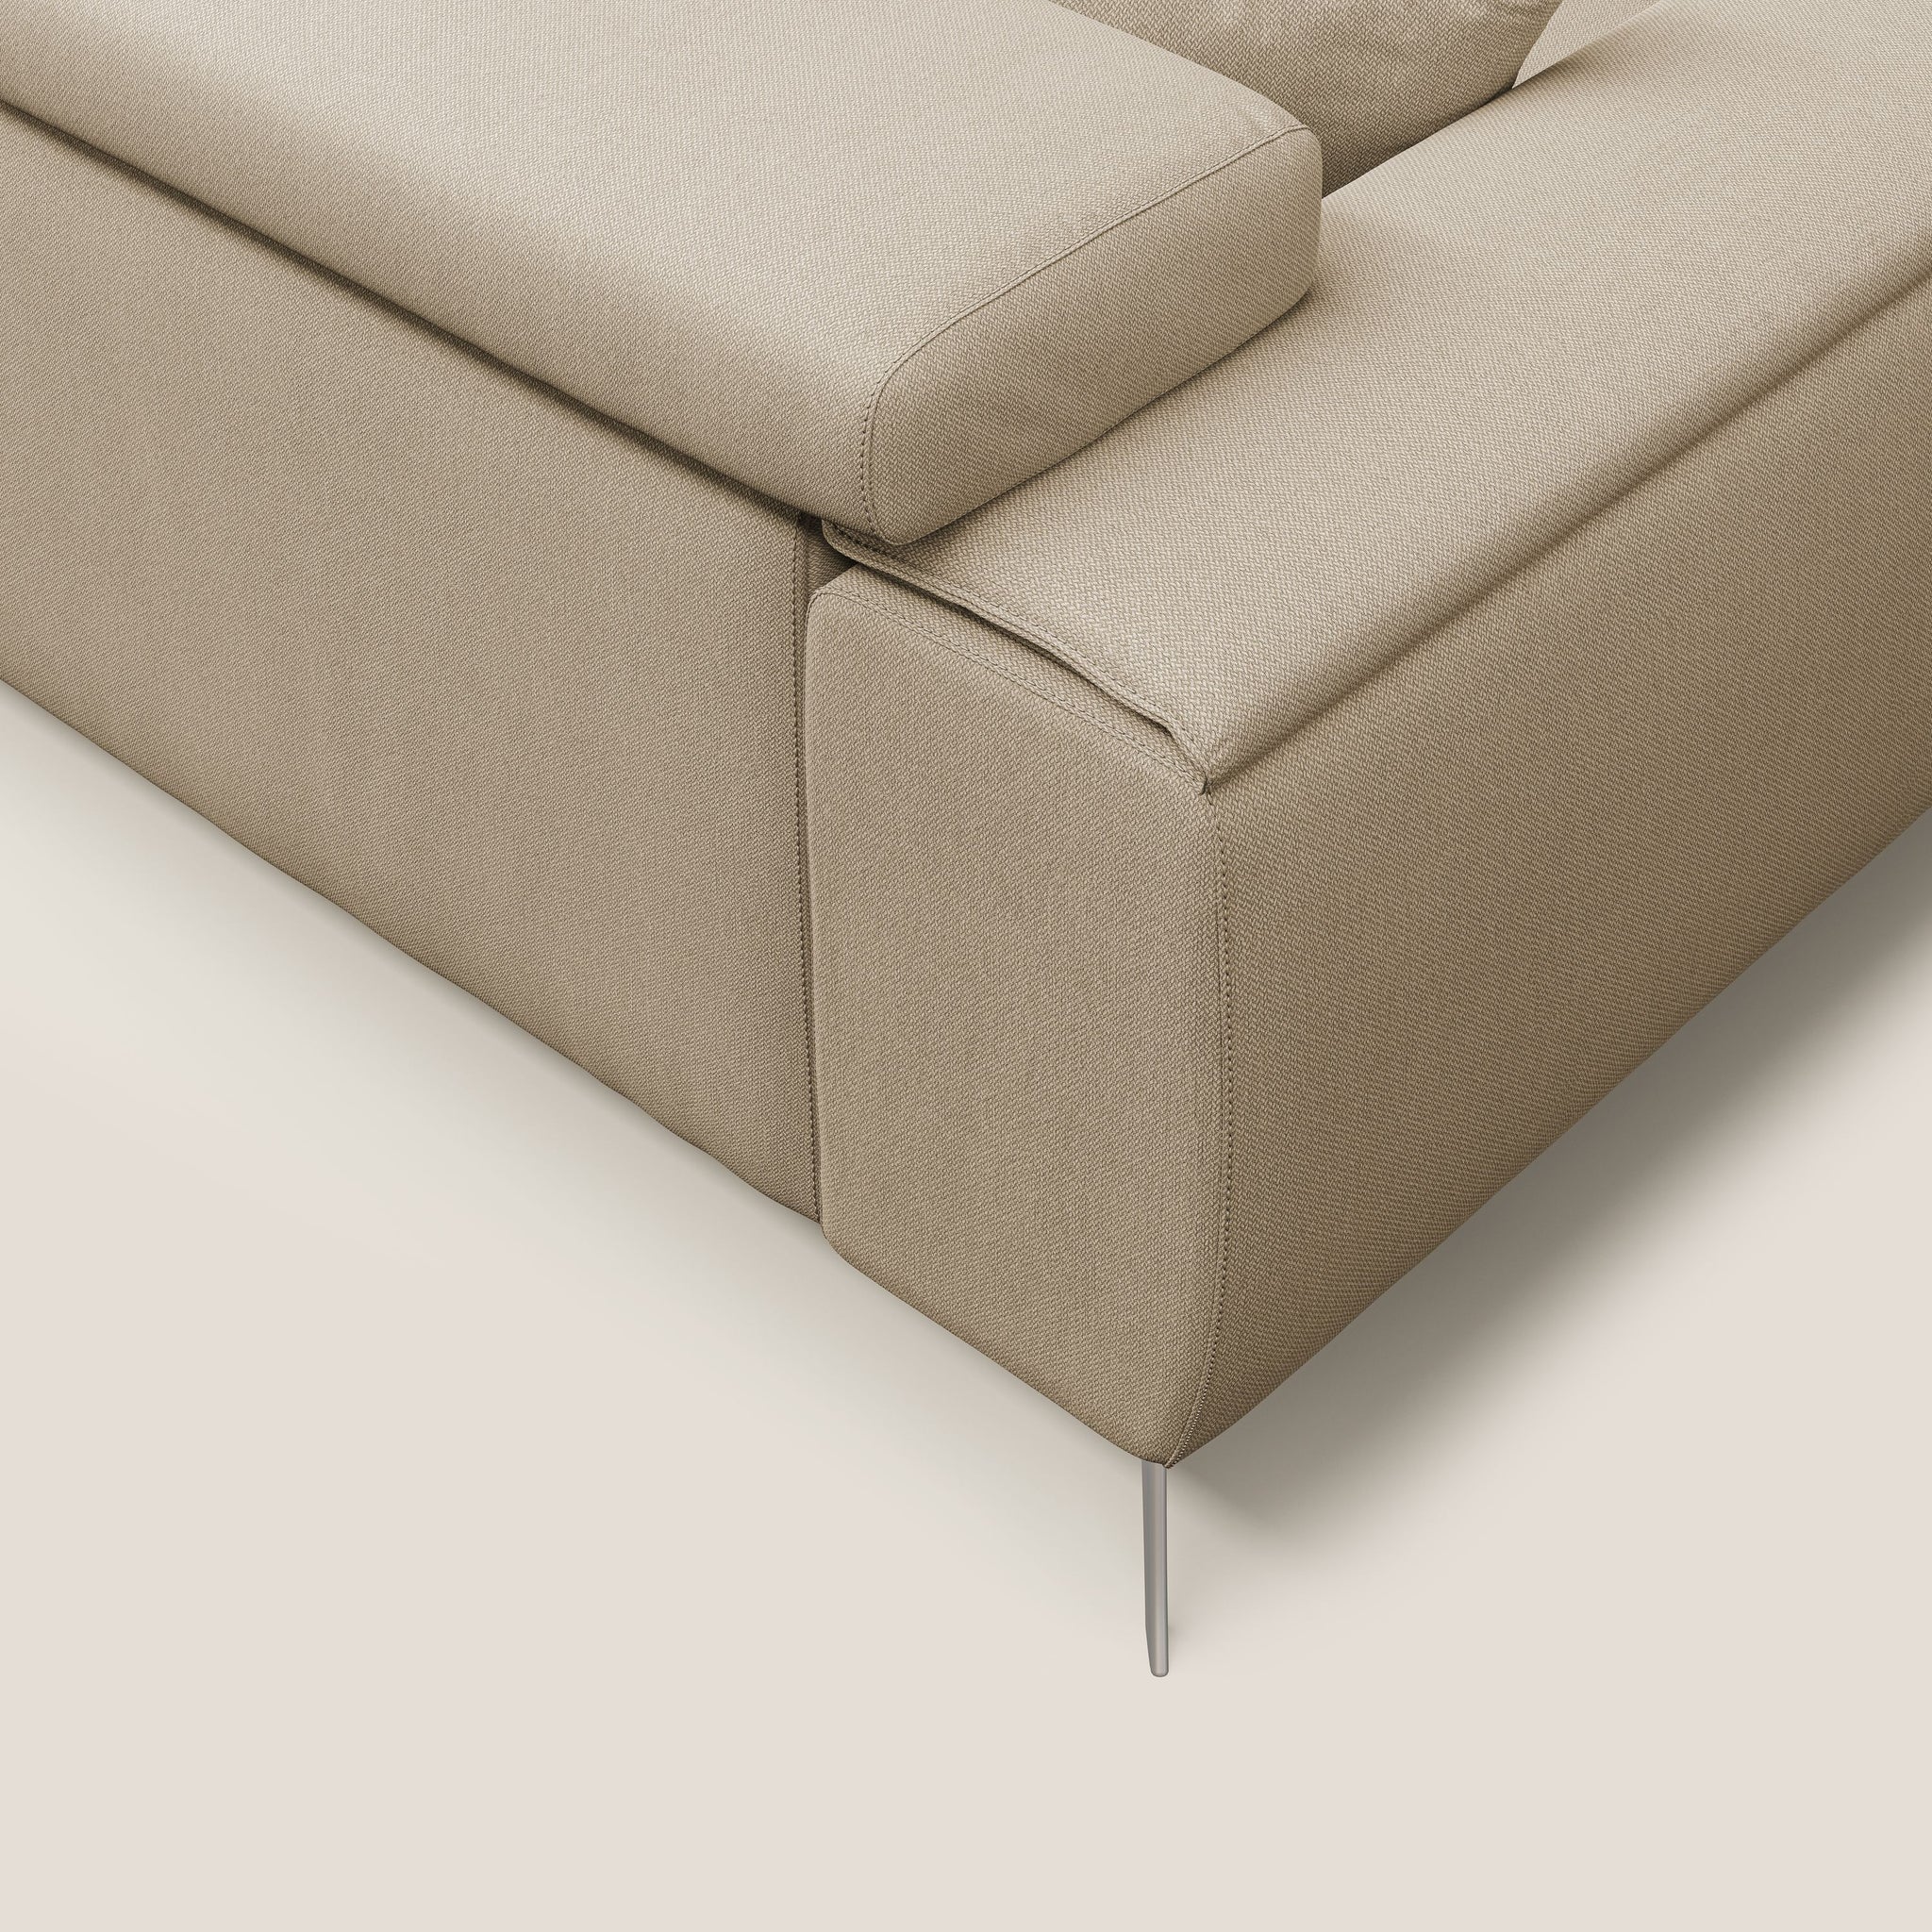 Fusion divano con sedute allungabili in tessuto smacchiabile T05